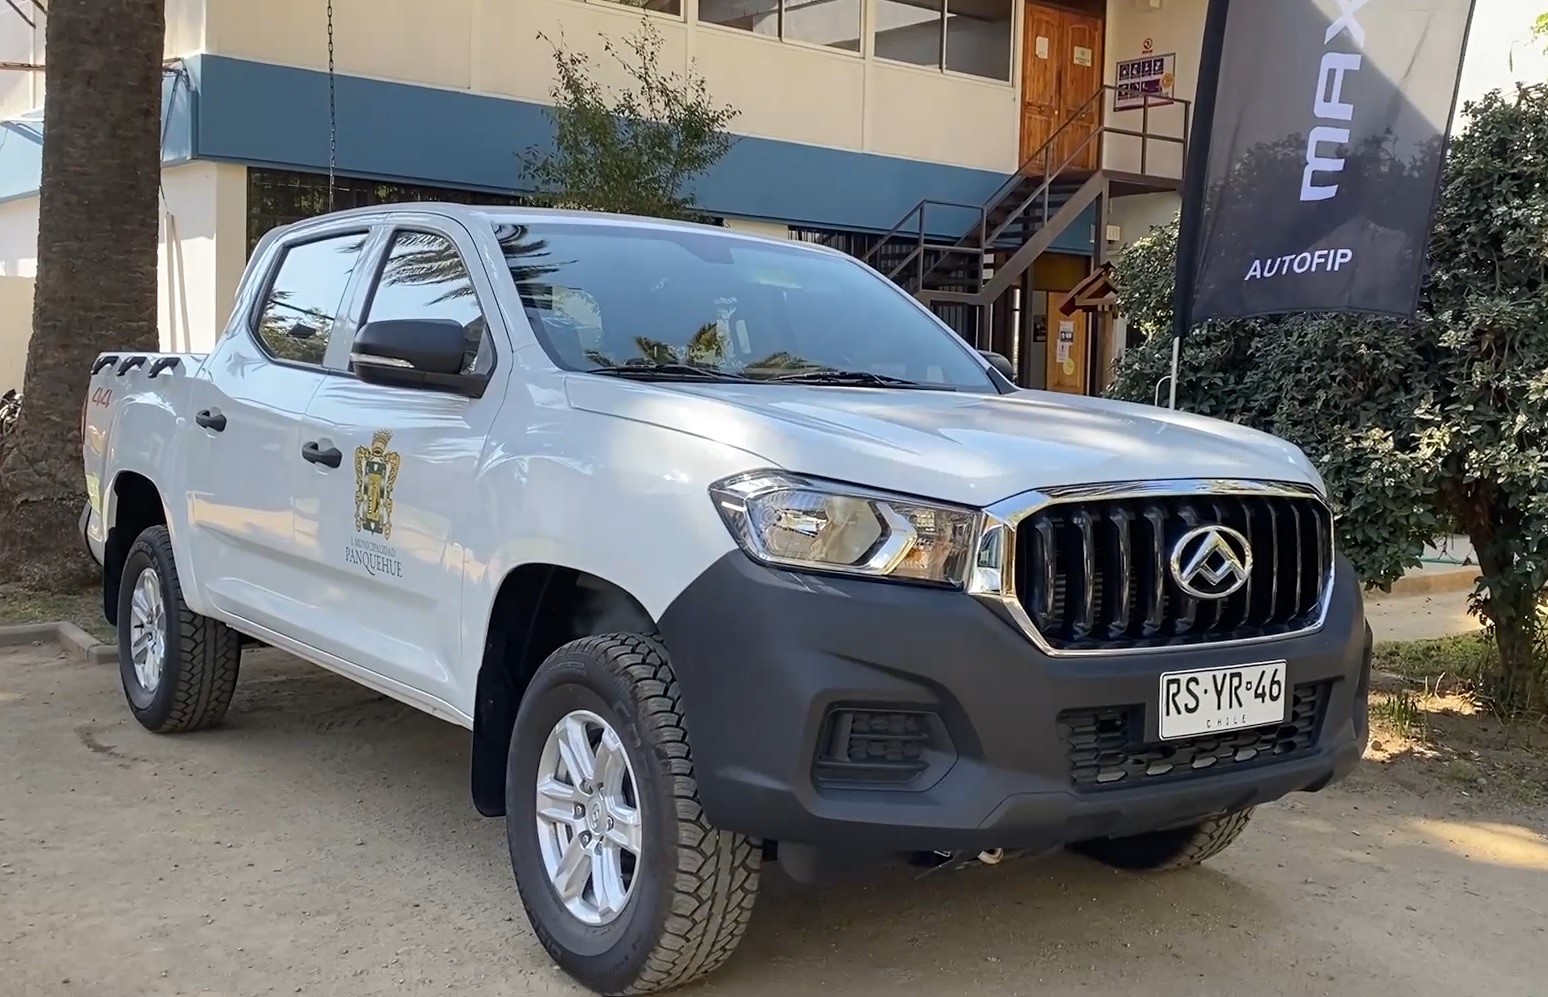 PANQUEHUE:  Municipalidad de Panquehue contara con dos nuevas camionetas